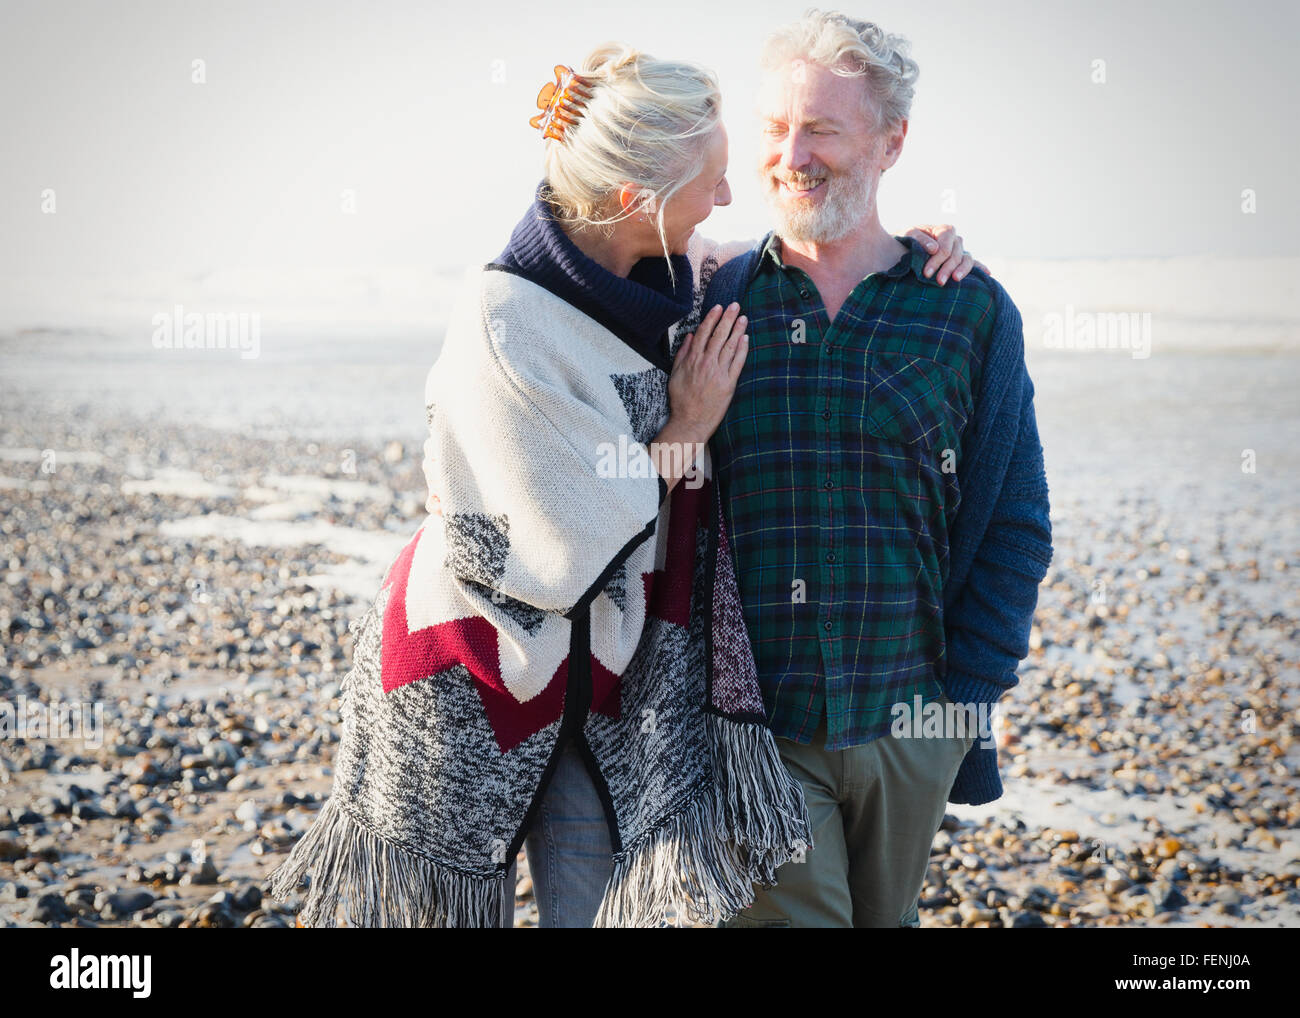 Älteres Paar zu umarmen und zu Fuß auf sonnigen felsigen Strand Stockfoto